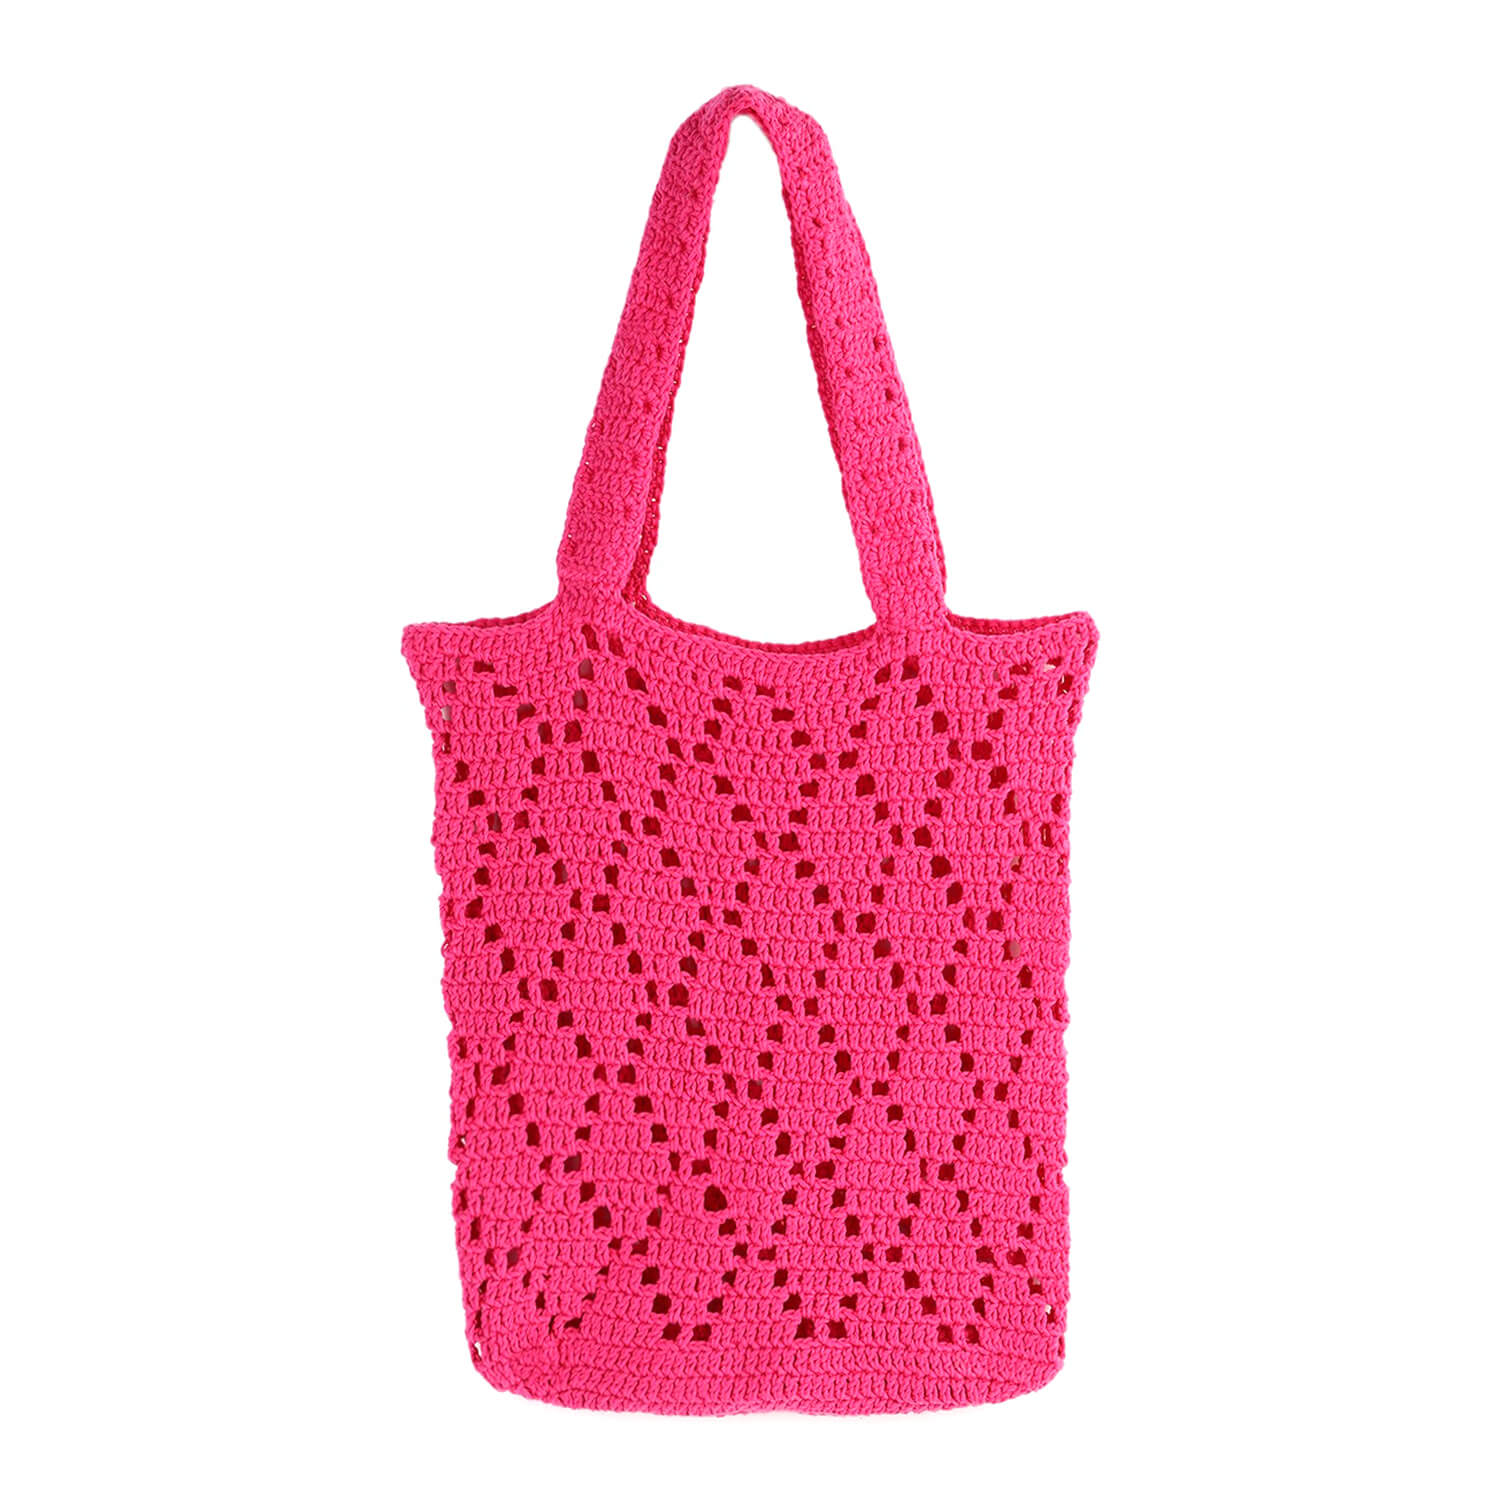 Handmade Crochet Market Bag - Dark Pink 2654